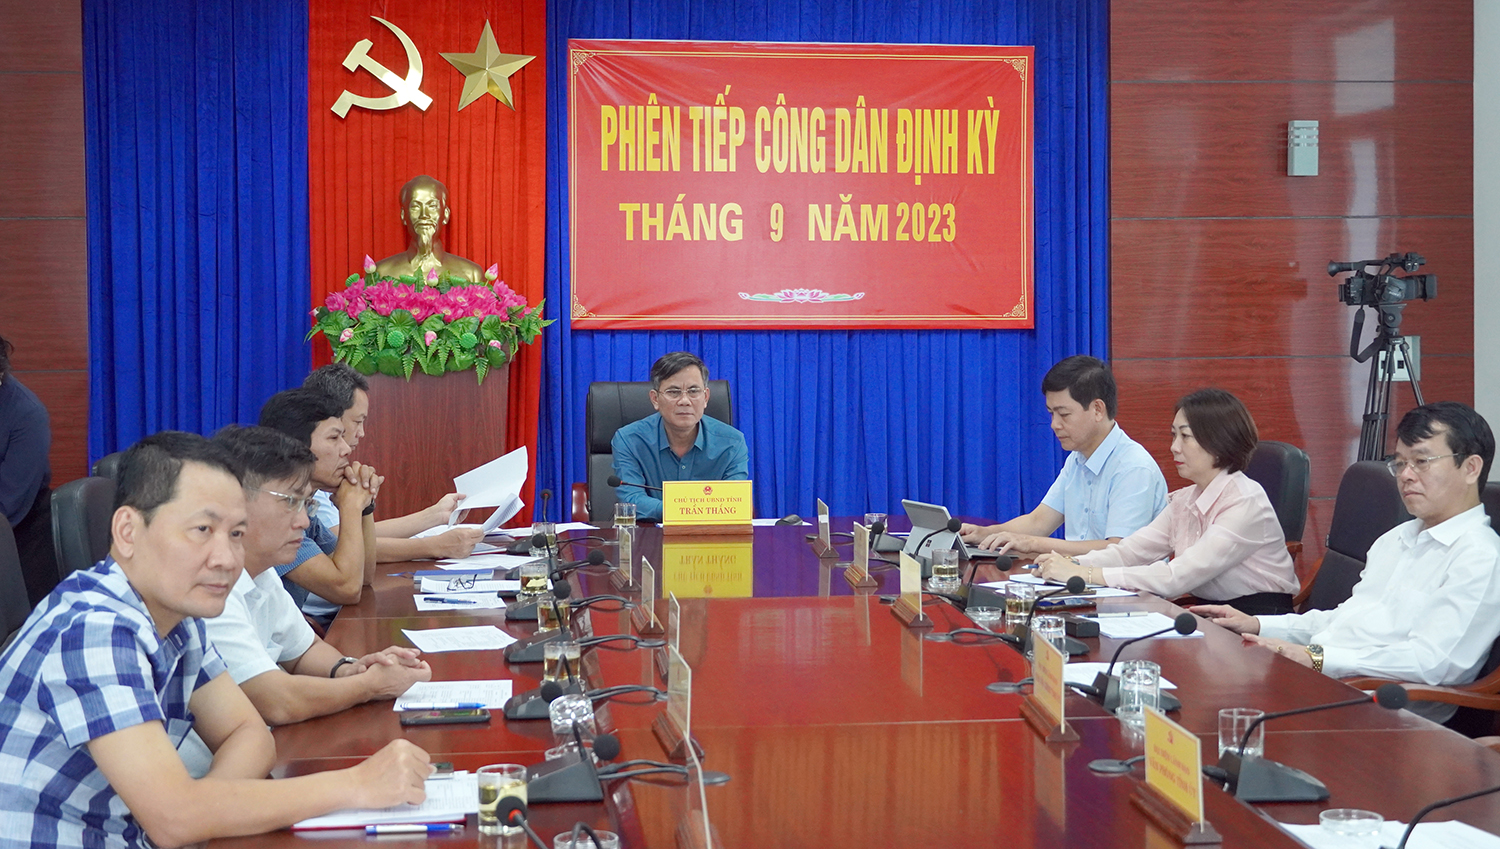 Toàn cảnh phiên tiếp công dân của dồng chí Chủ tịch UBND tỉnh Trần Thắng  